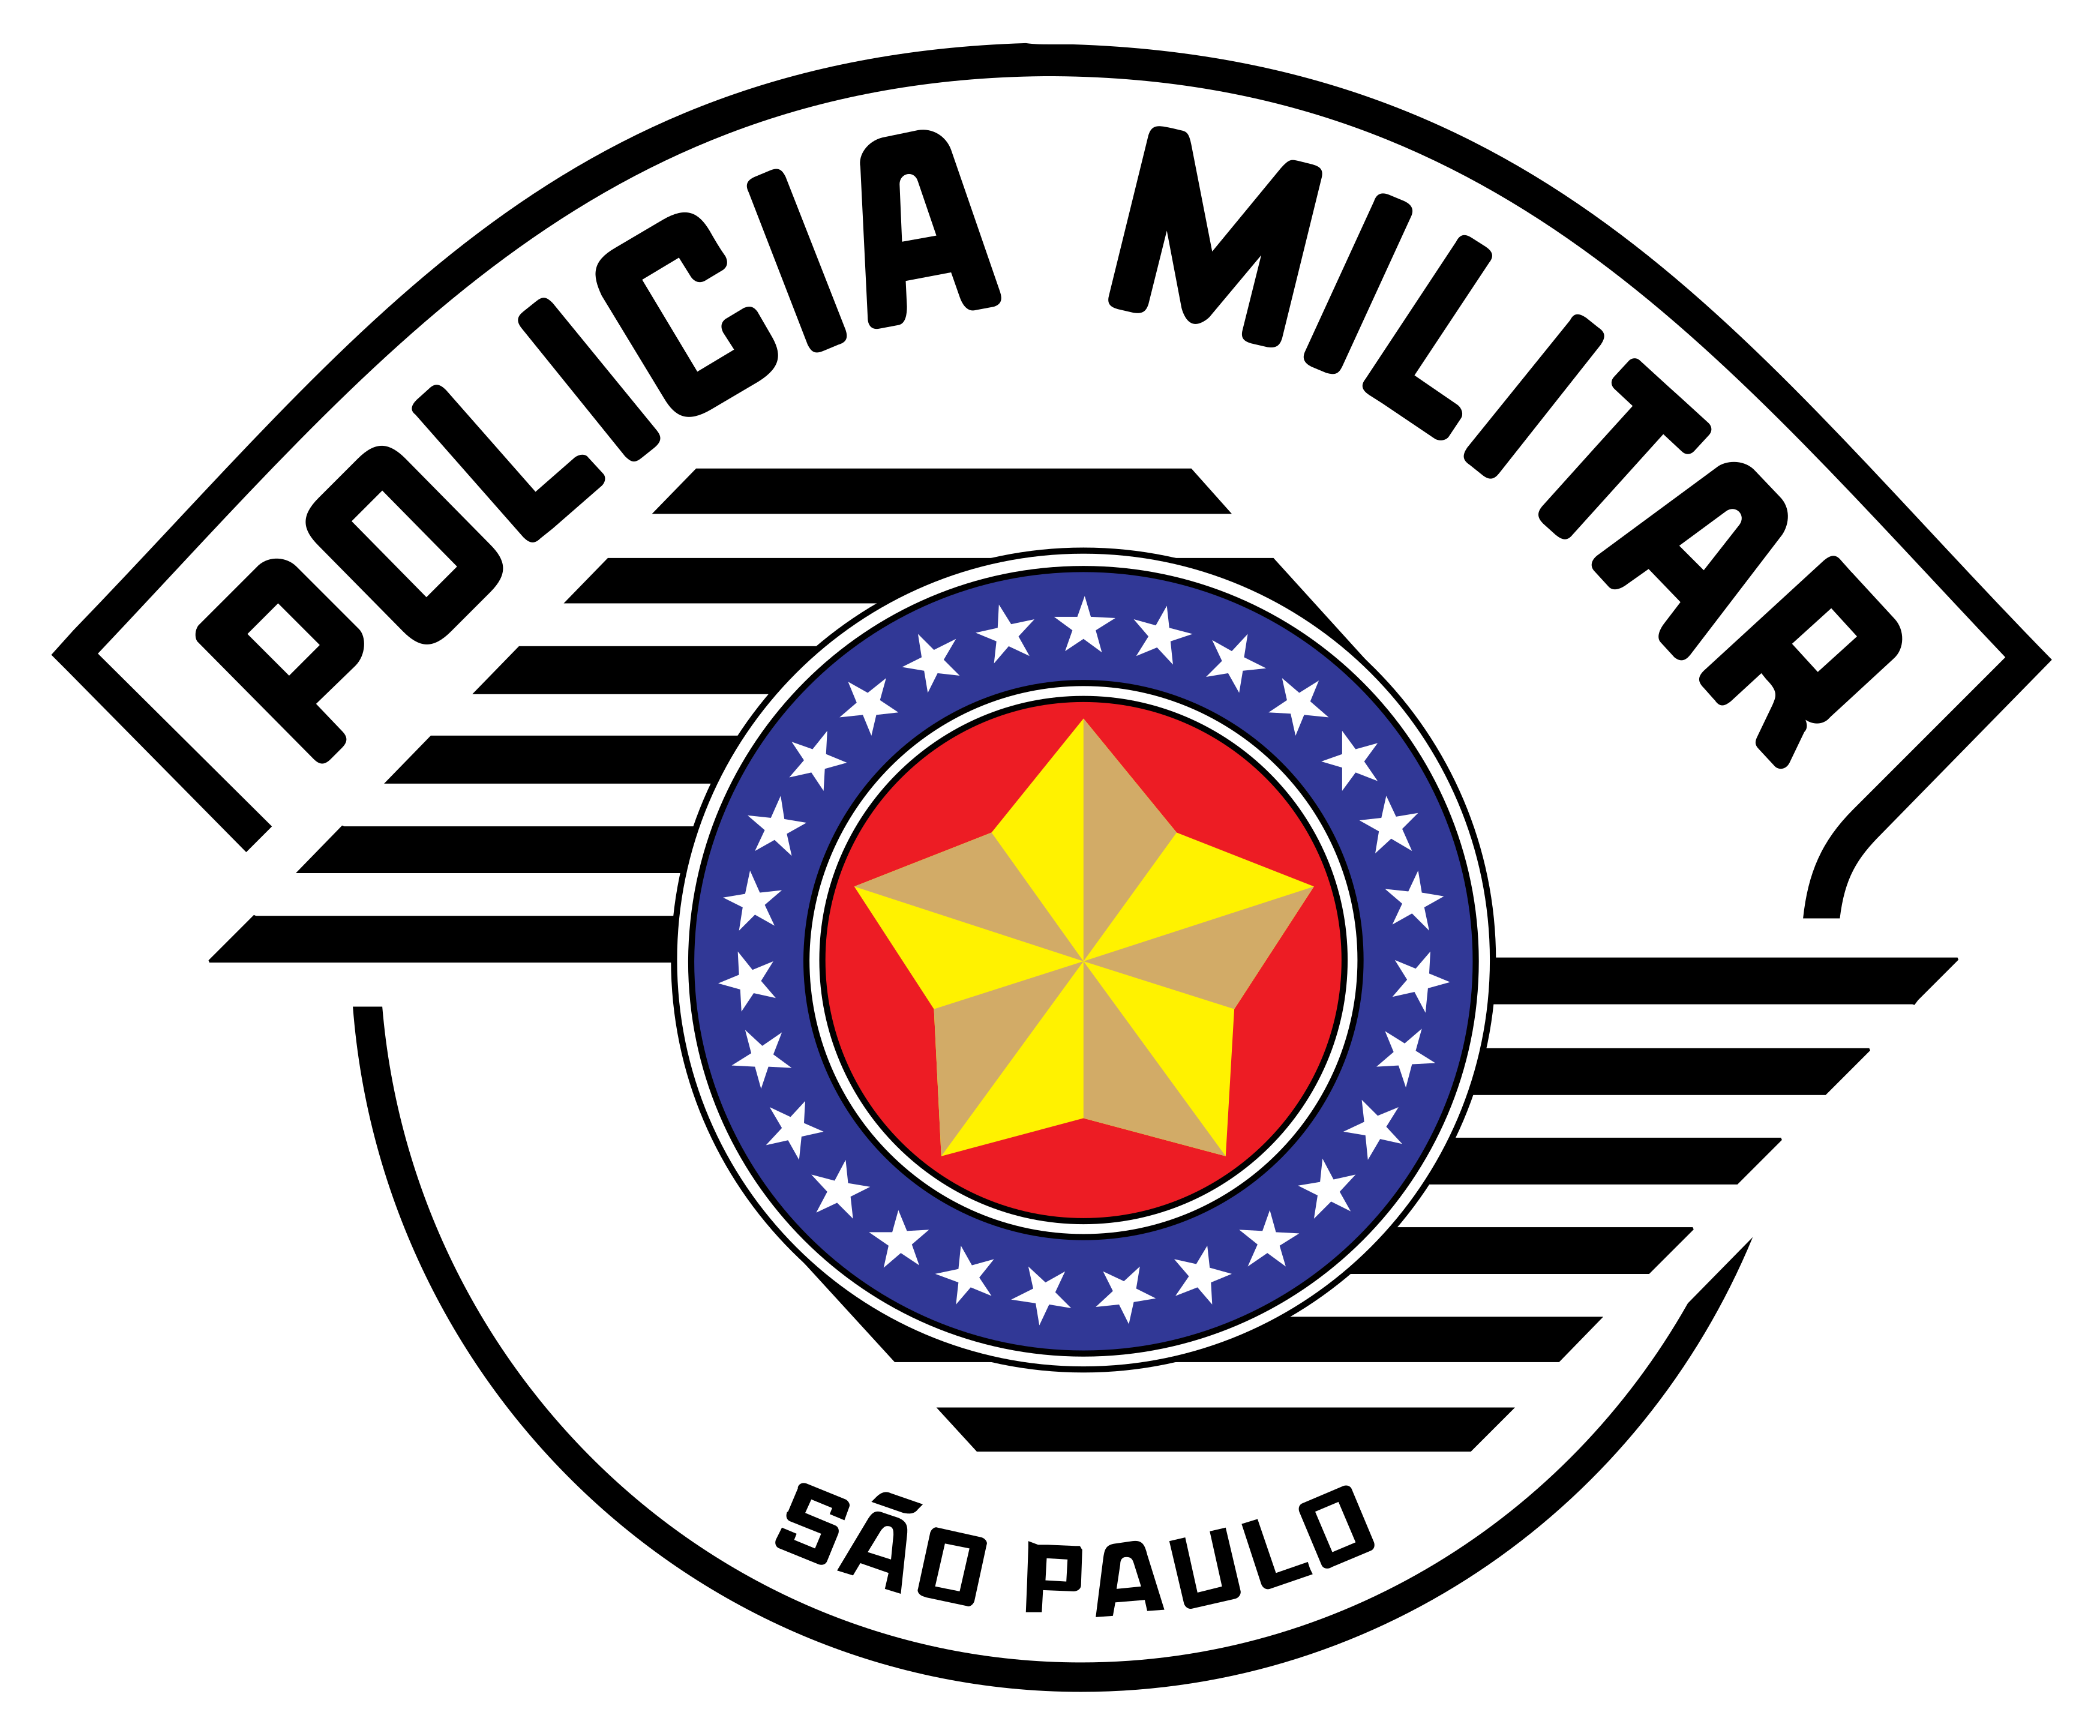 23.1-policia-militar-sp-logo